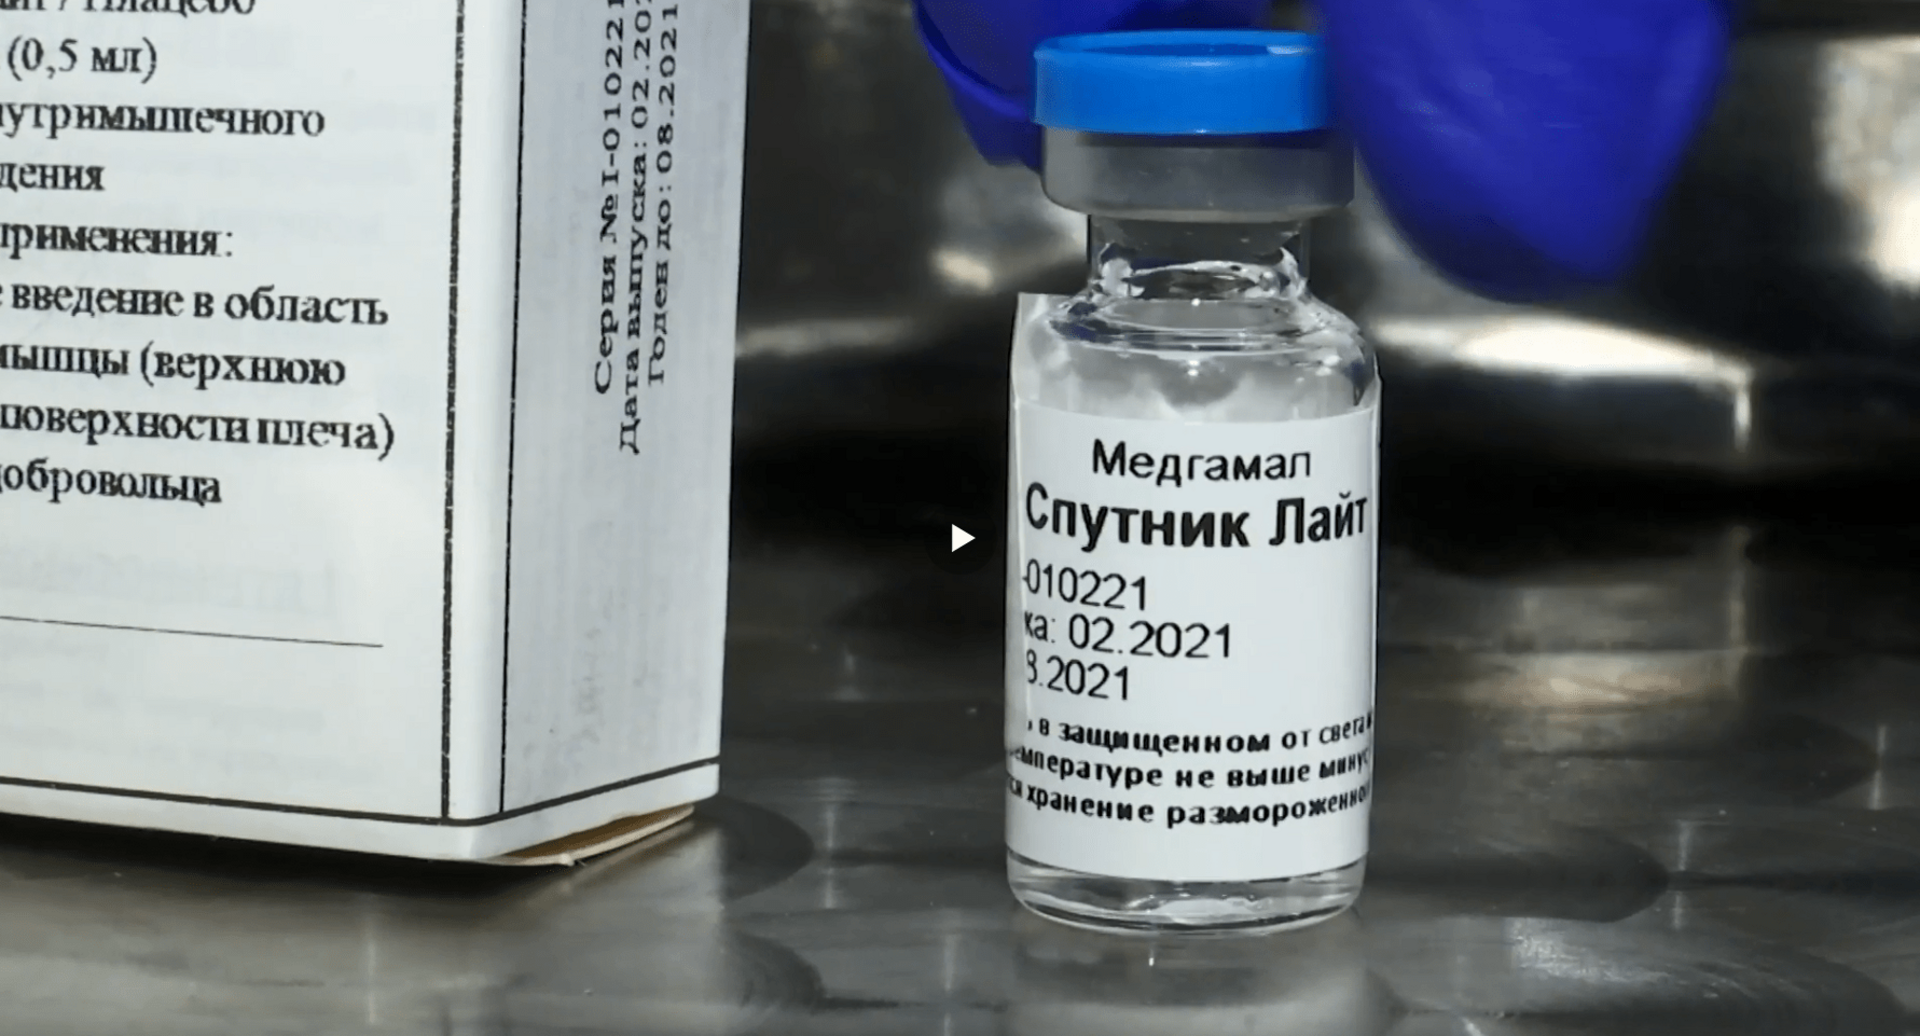 Вакцина ижевск. Спутник Лайт вакцина от коронавируса. Ампула вакцины Спутник Лайт. Вакцина Спутник Лайт однокомпонентная.